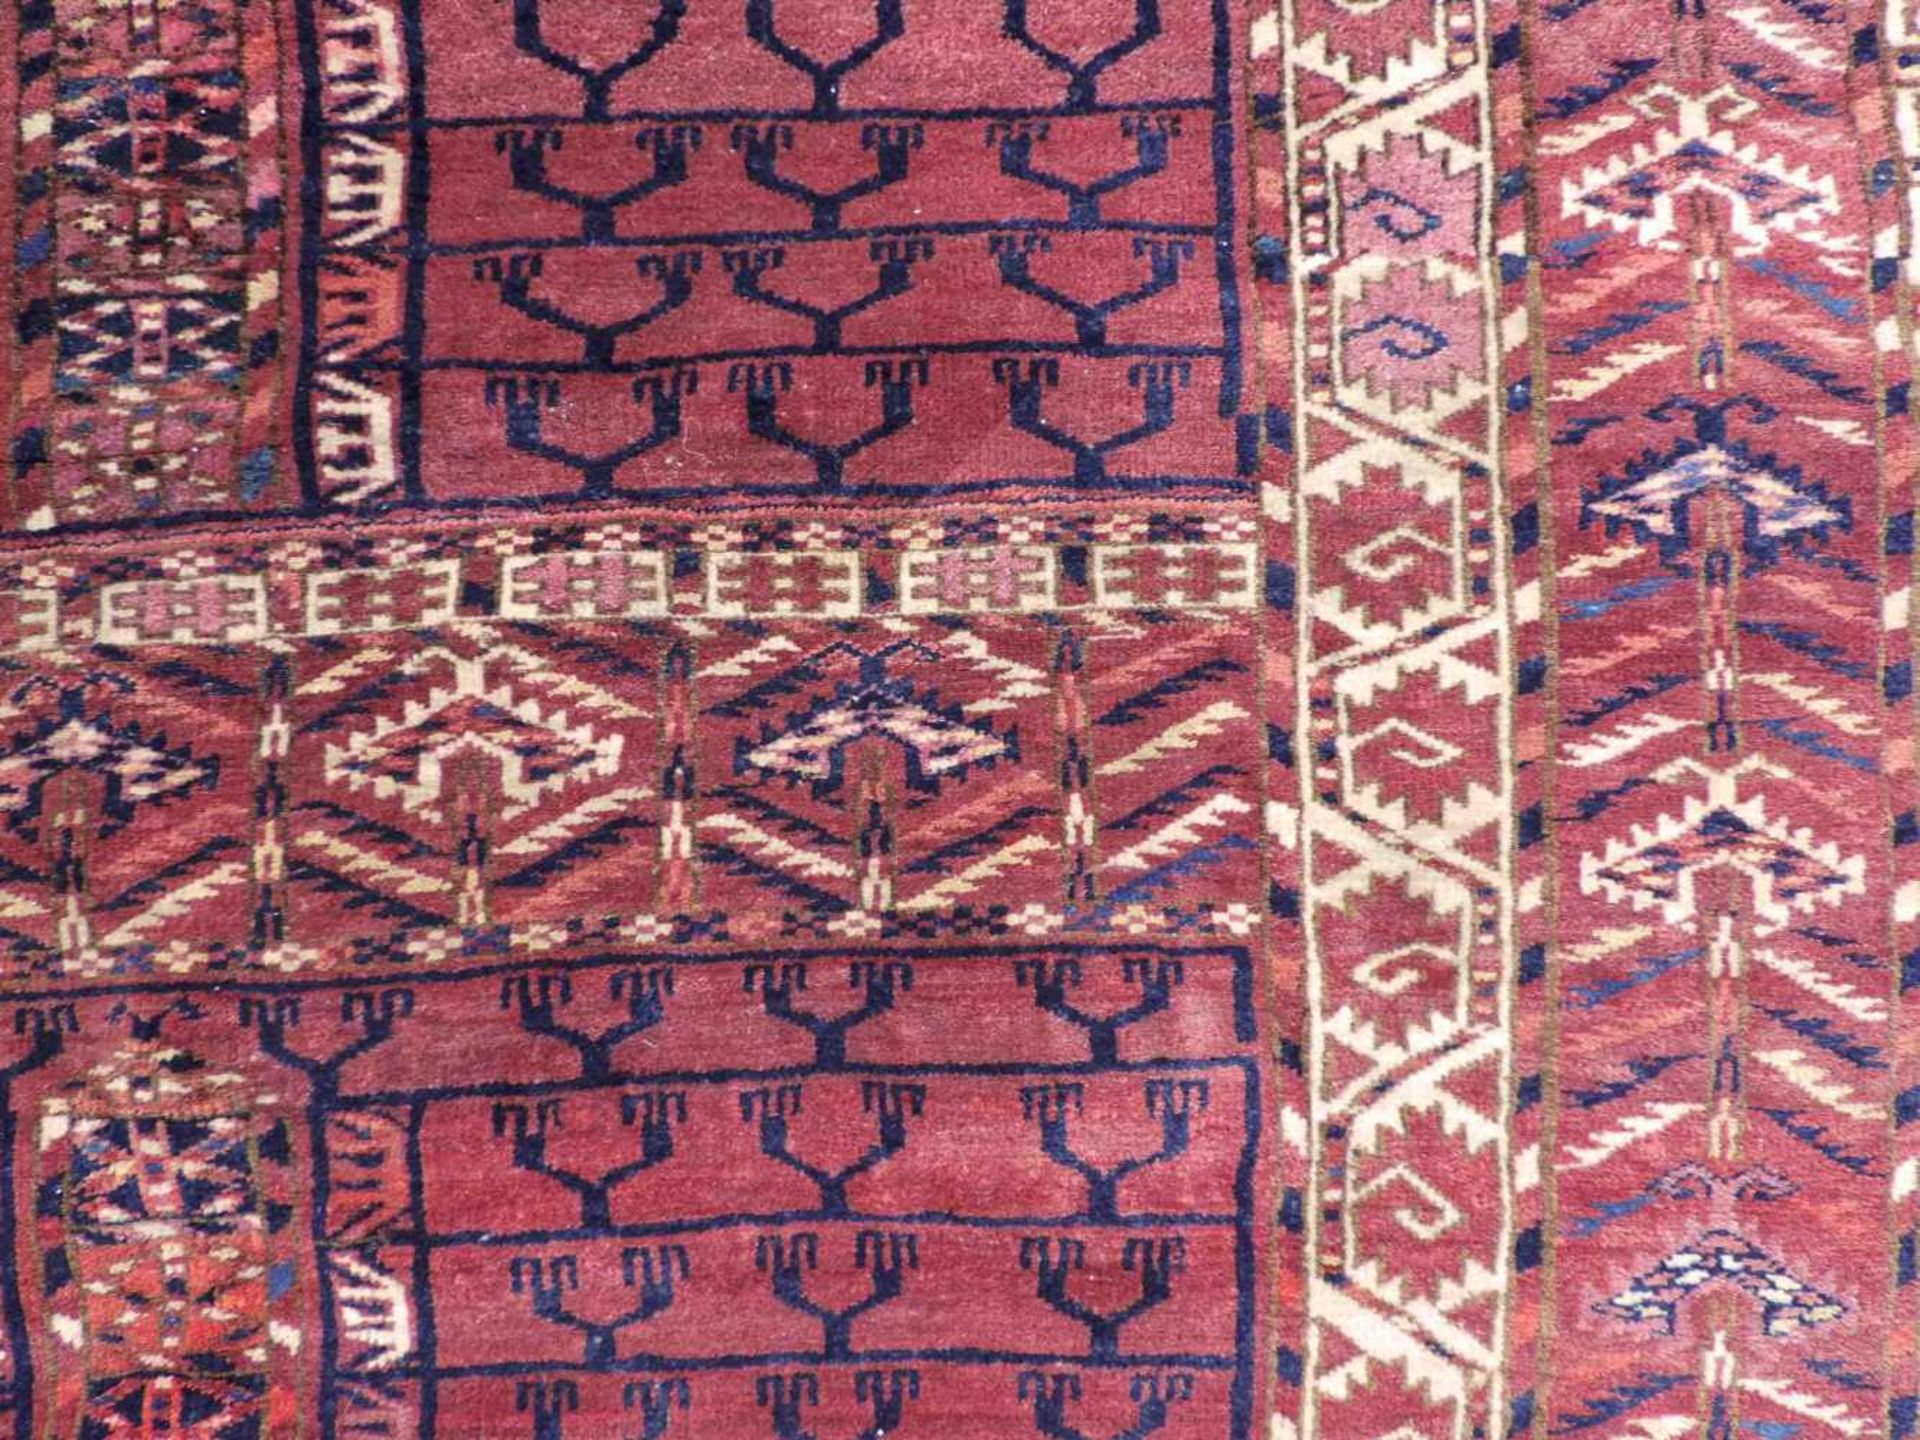 Tekke Ensi Stammesteppich. Turkmenistan. Antik, um 1900.148 cm x 125 cm. Handgeknüpft. Wolle auf - Bild 4 aus 7